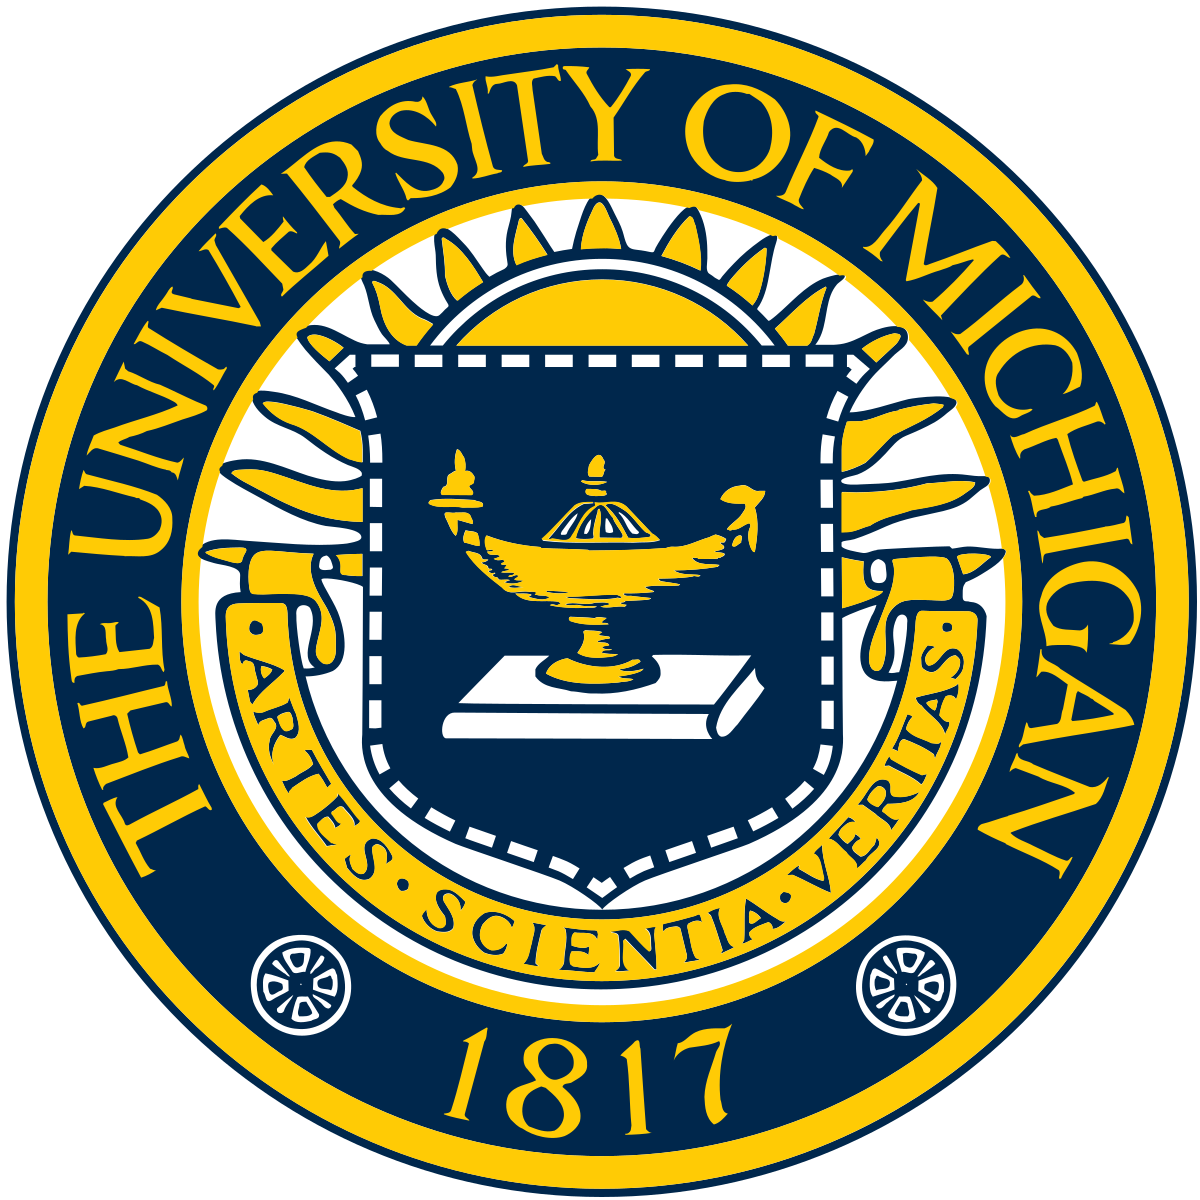 University Of Michigan Wikipedia